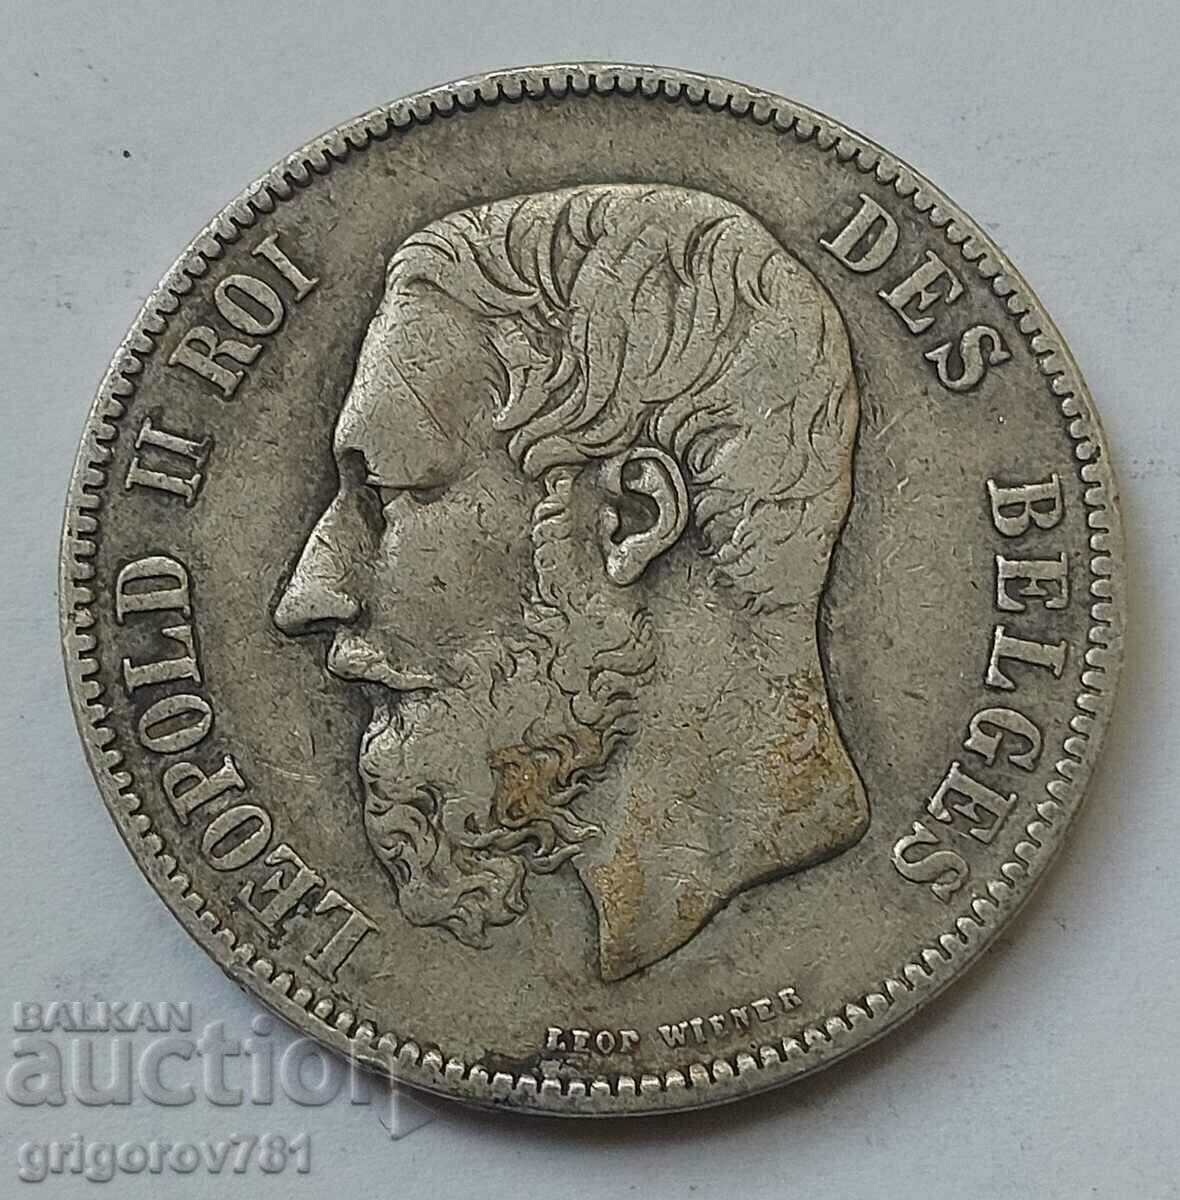 5 Francs Silver Belgium 1873 Silver Coin #179